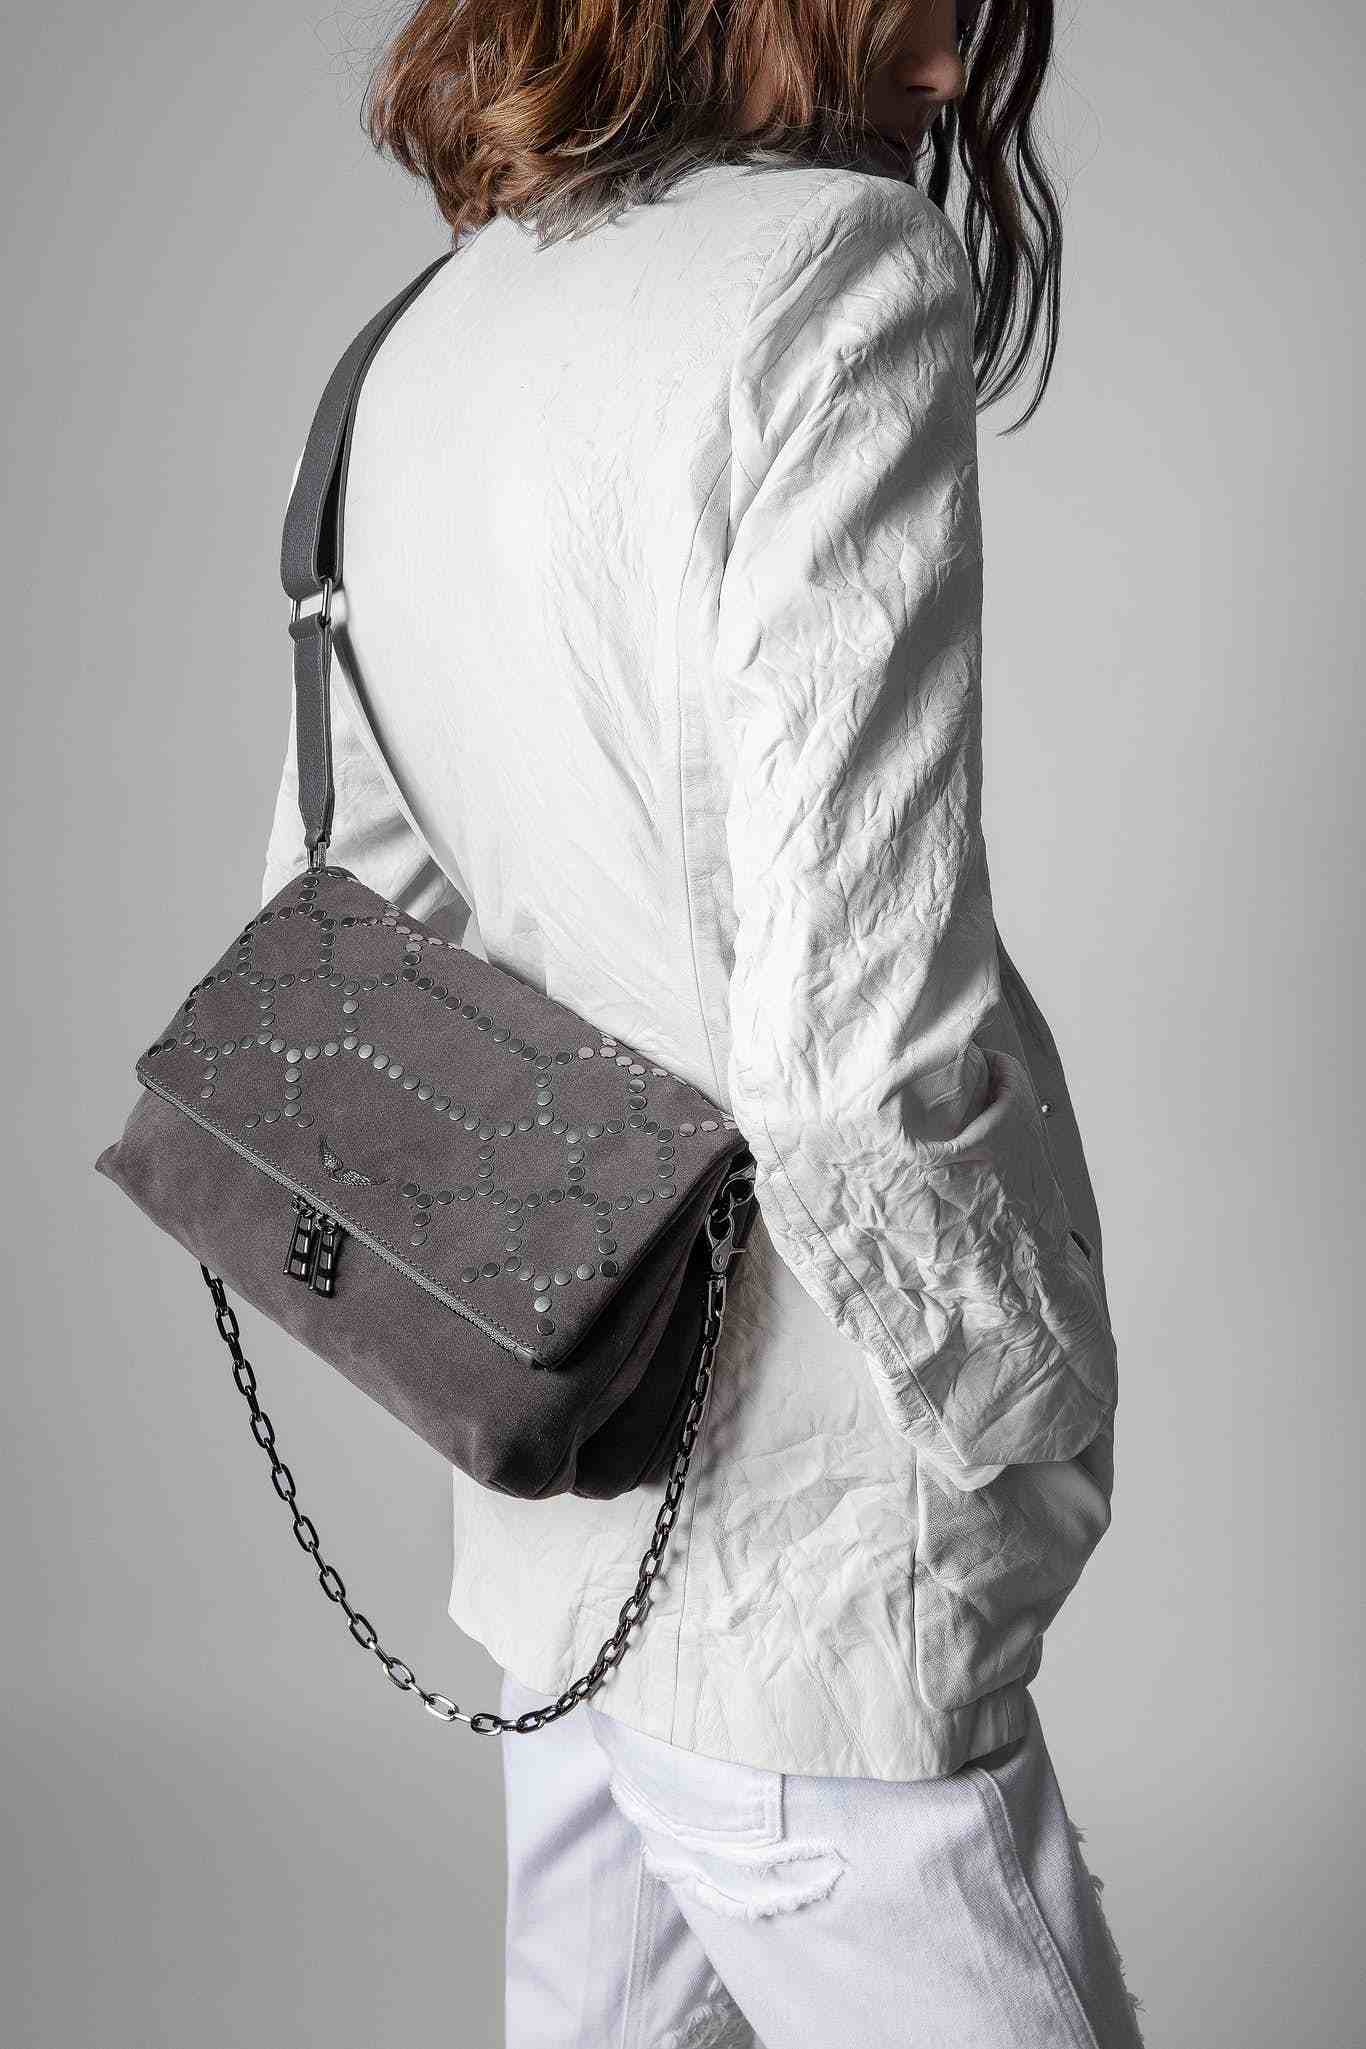 法国时装品牌Zadig Voltaire包包——自由、自我和思考